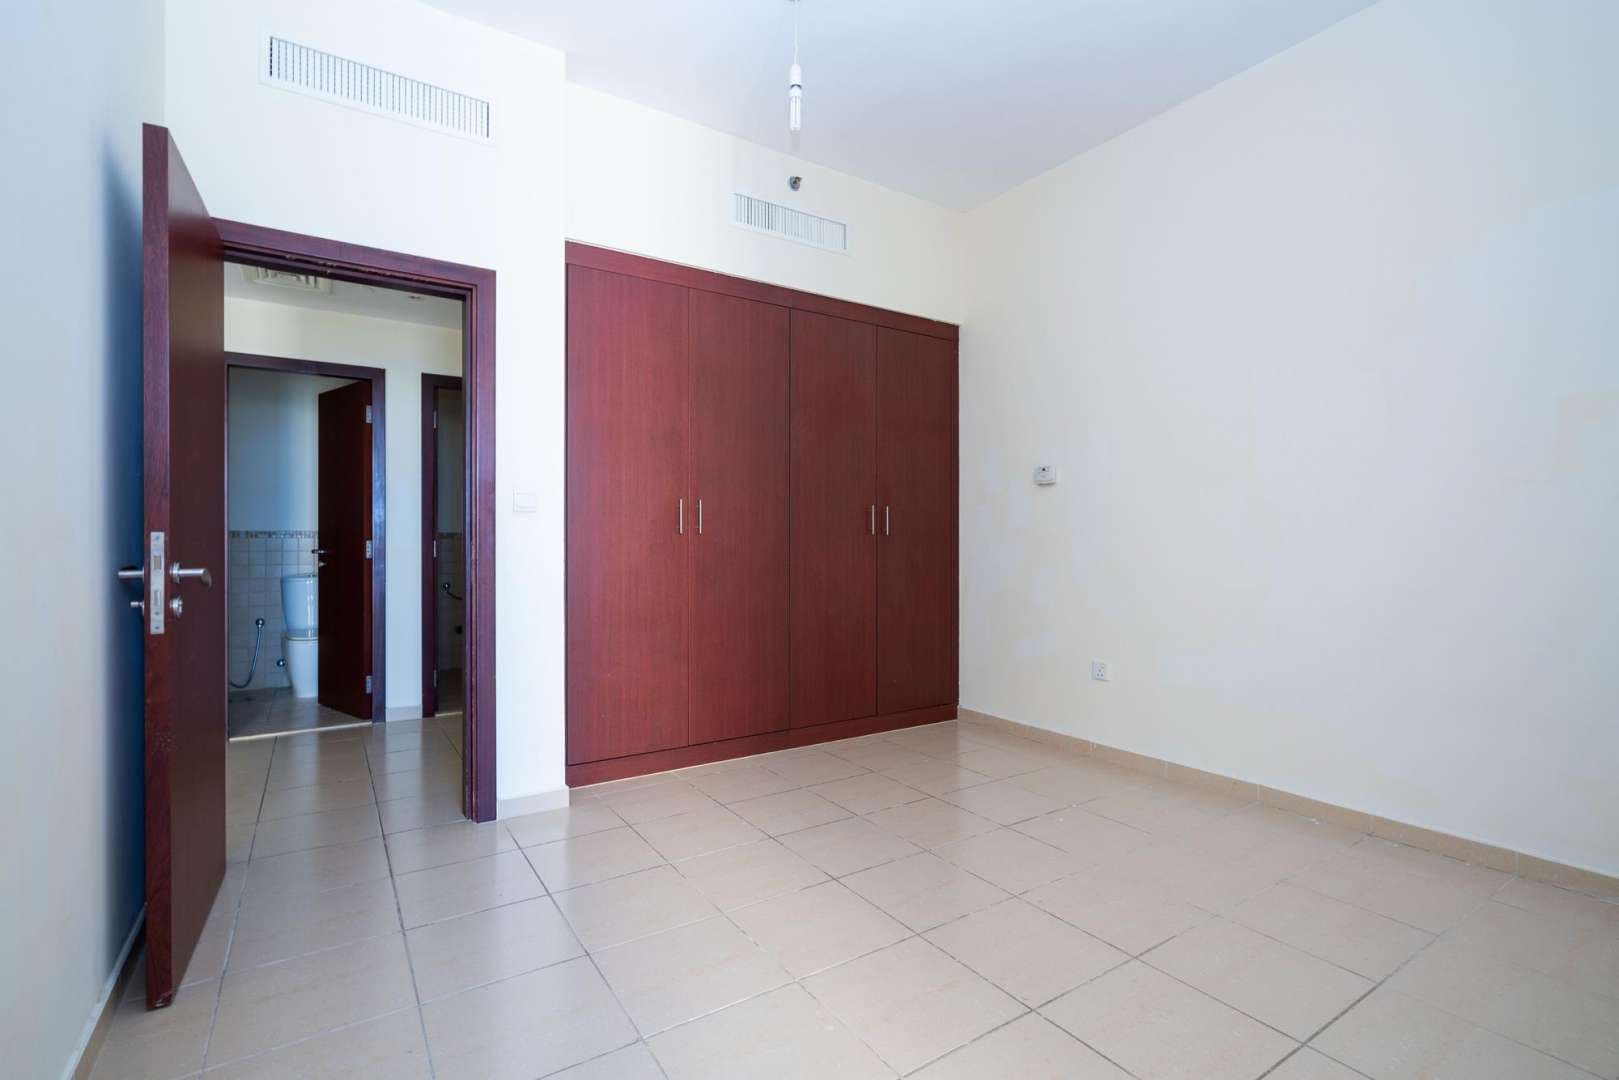 2 Bedroom Apartment For Rent Bahar Lp05025 2c942896b082a400.jpeg